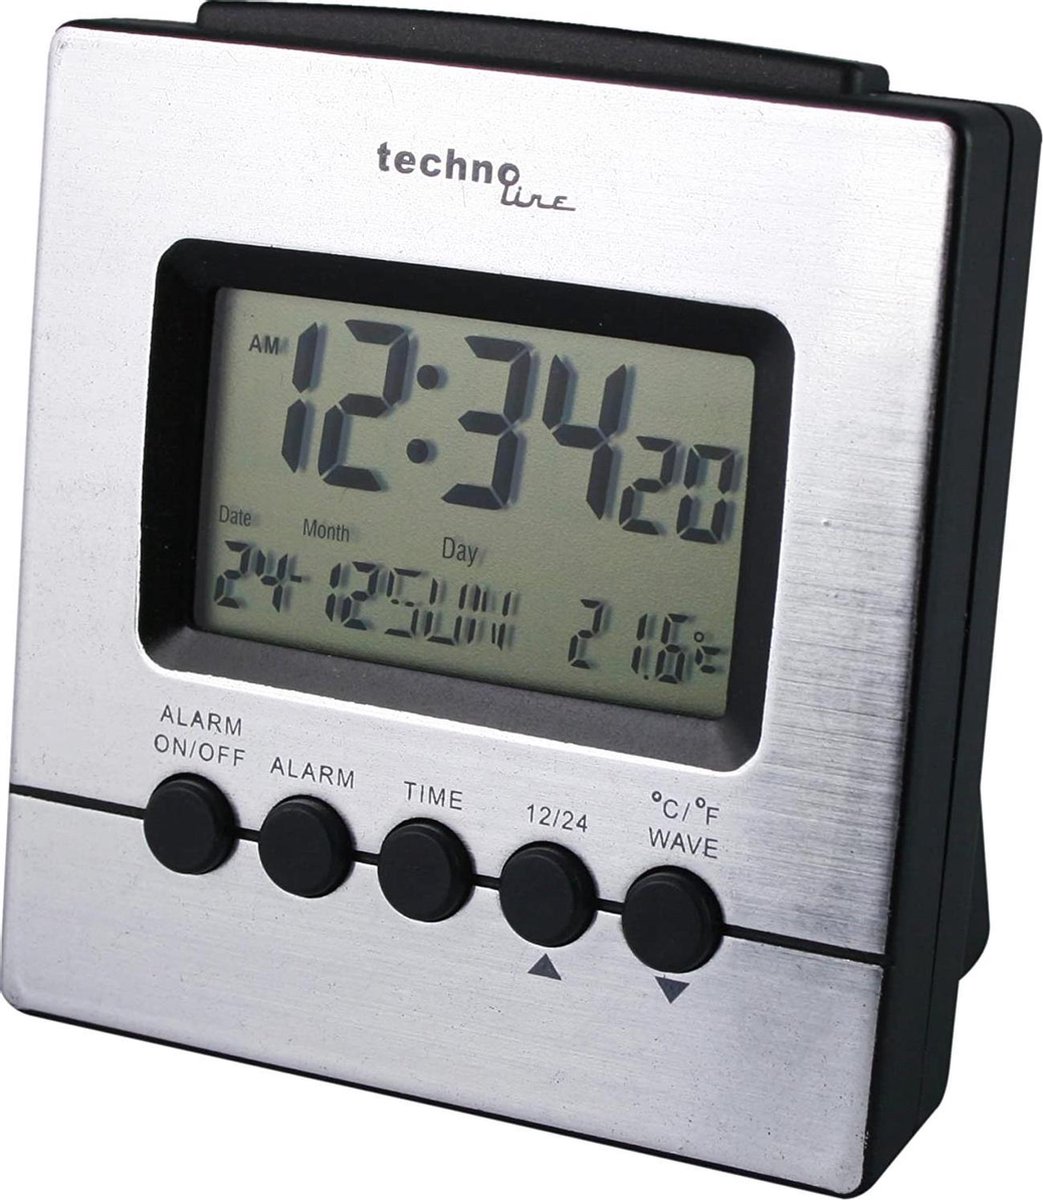 Technoline WT 228 - Wekker - Binnentemperatuur - Radiogestuurde tijdsaanduiding - 12/24 - Datumaanduiding - Alarm - Snooze - Achtergrond verlichting - Zilverkleurig - Zwart